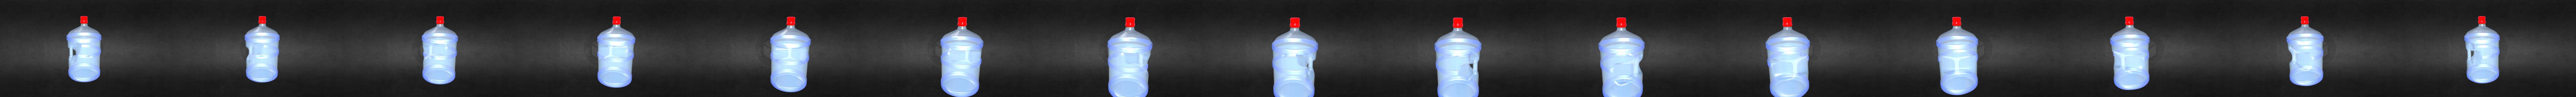 bidon de agua Free 3D Model in Beverage 3DExport